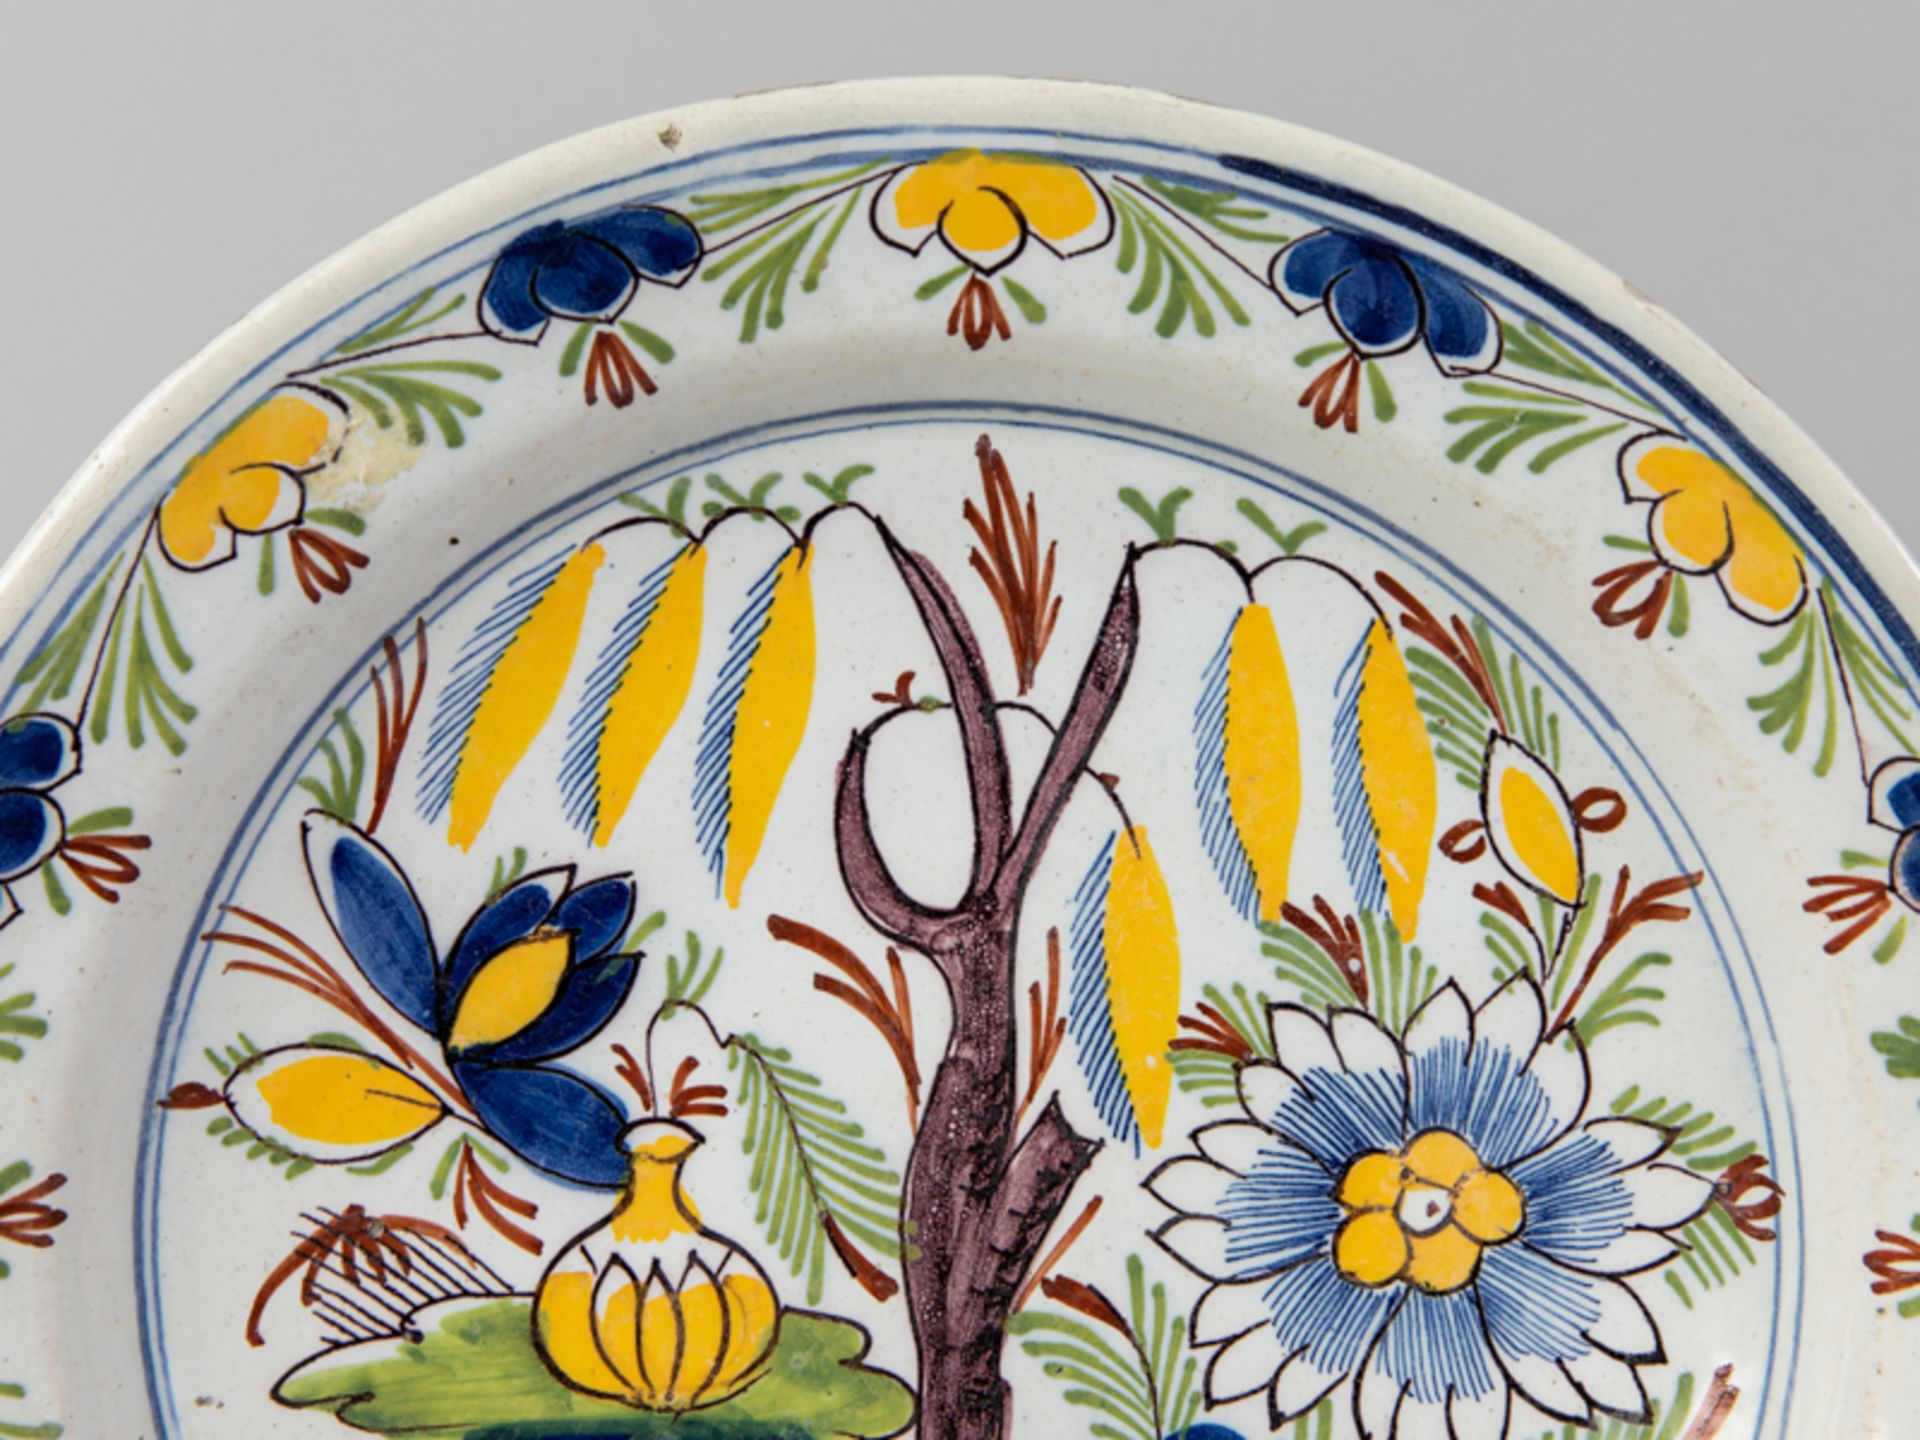 Großer Fayence-Teller mit farbiger Blumen- u. Gartenmalerei, wohl Delft, 2. Hälfte 18. Jh. - Image 2 of 3